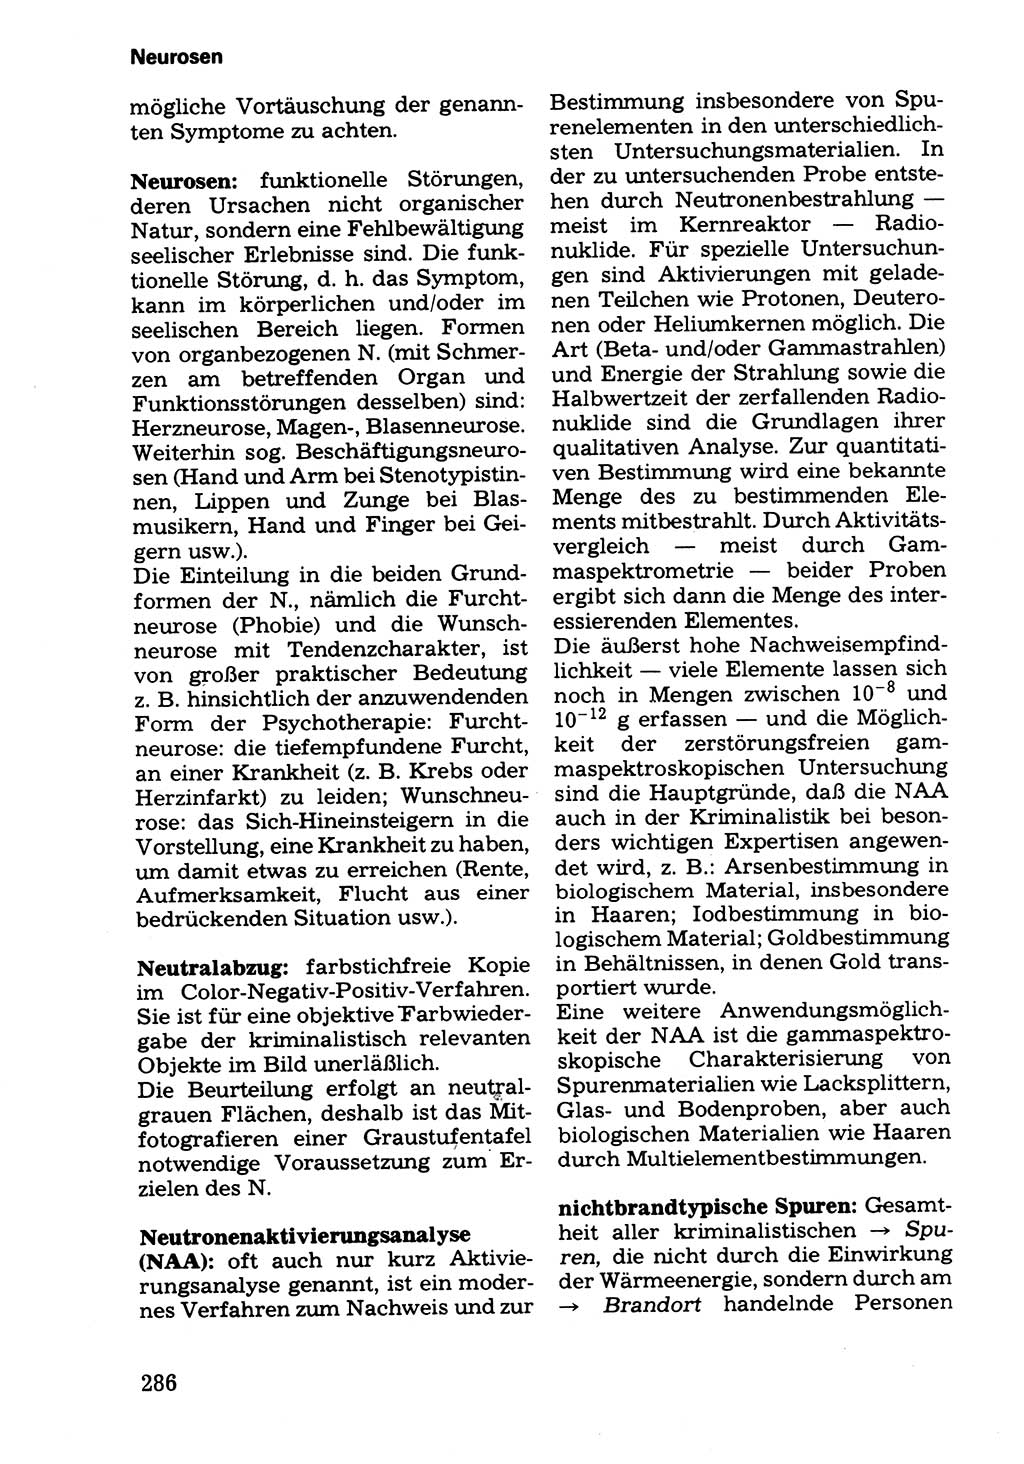 Wörterbuch der sozialistischen Kriminalistik [Deutsche Demokratische Republik (DDR)] 1981, Seite 286 (Wb. soz. Krim. DDR 1981, S. 286)